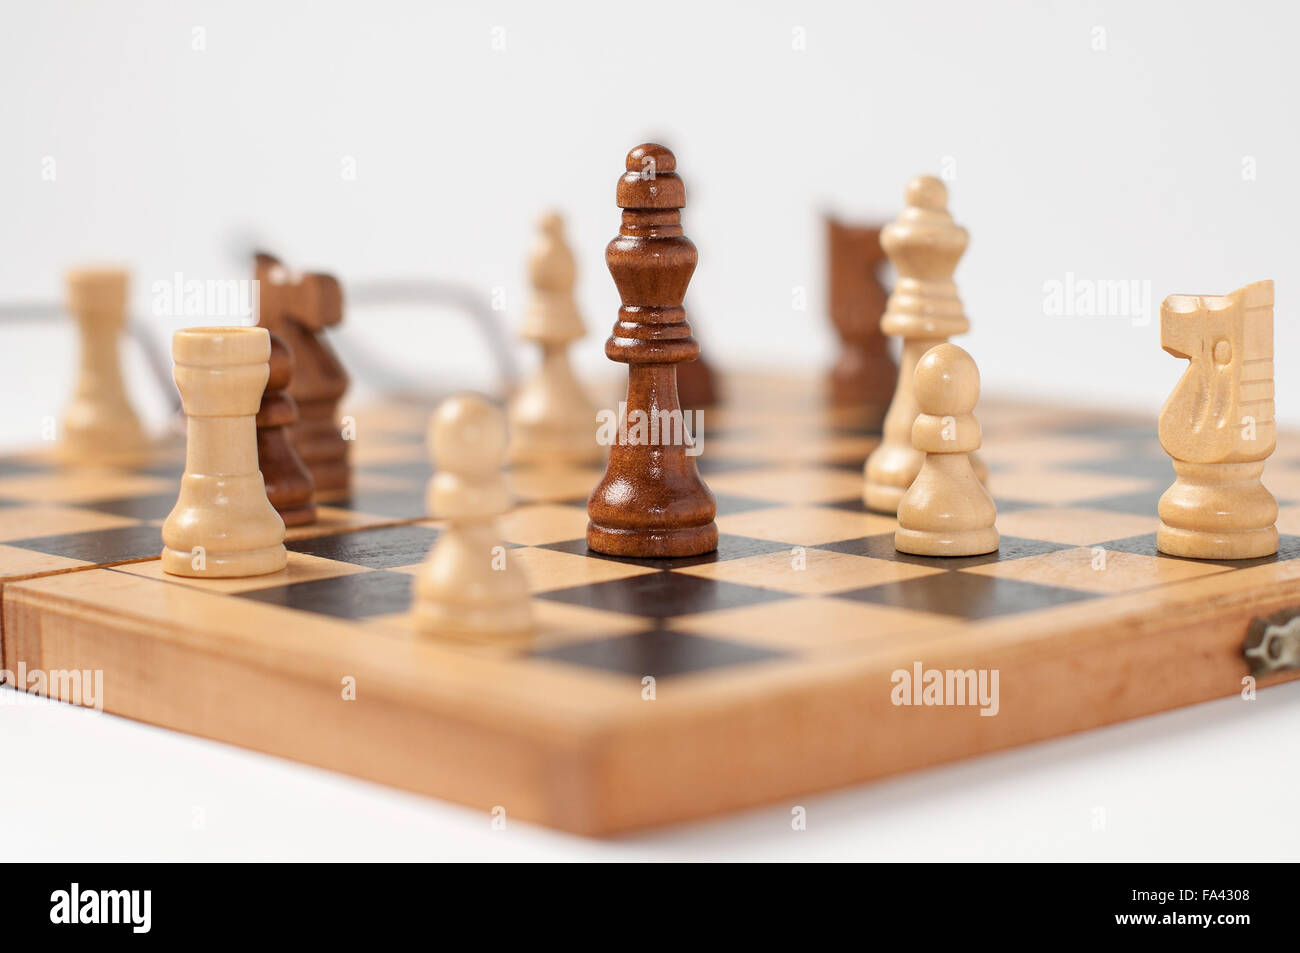 Le plateau de jeu d'échecs sur la photo avec une base et un fond blancs avec l'ajout de lunettes de joueurs d'échecs Banque D'Images